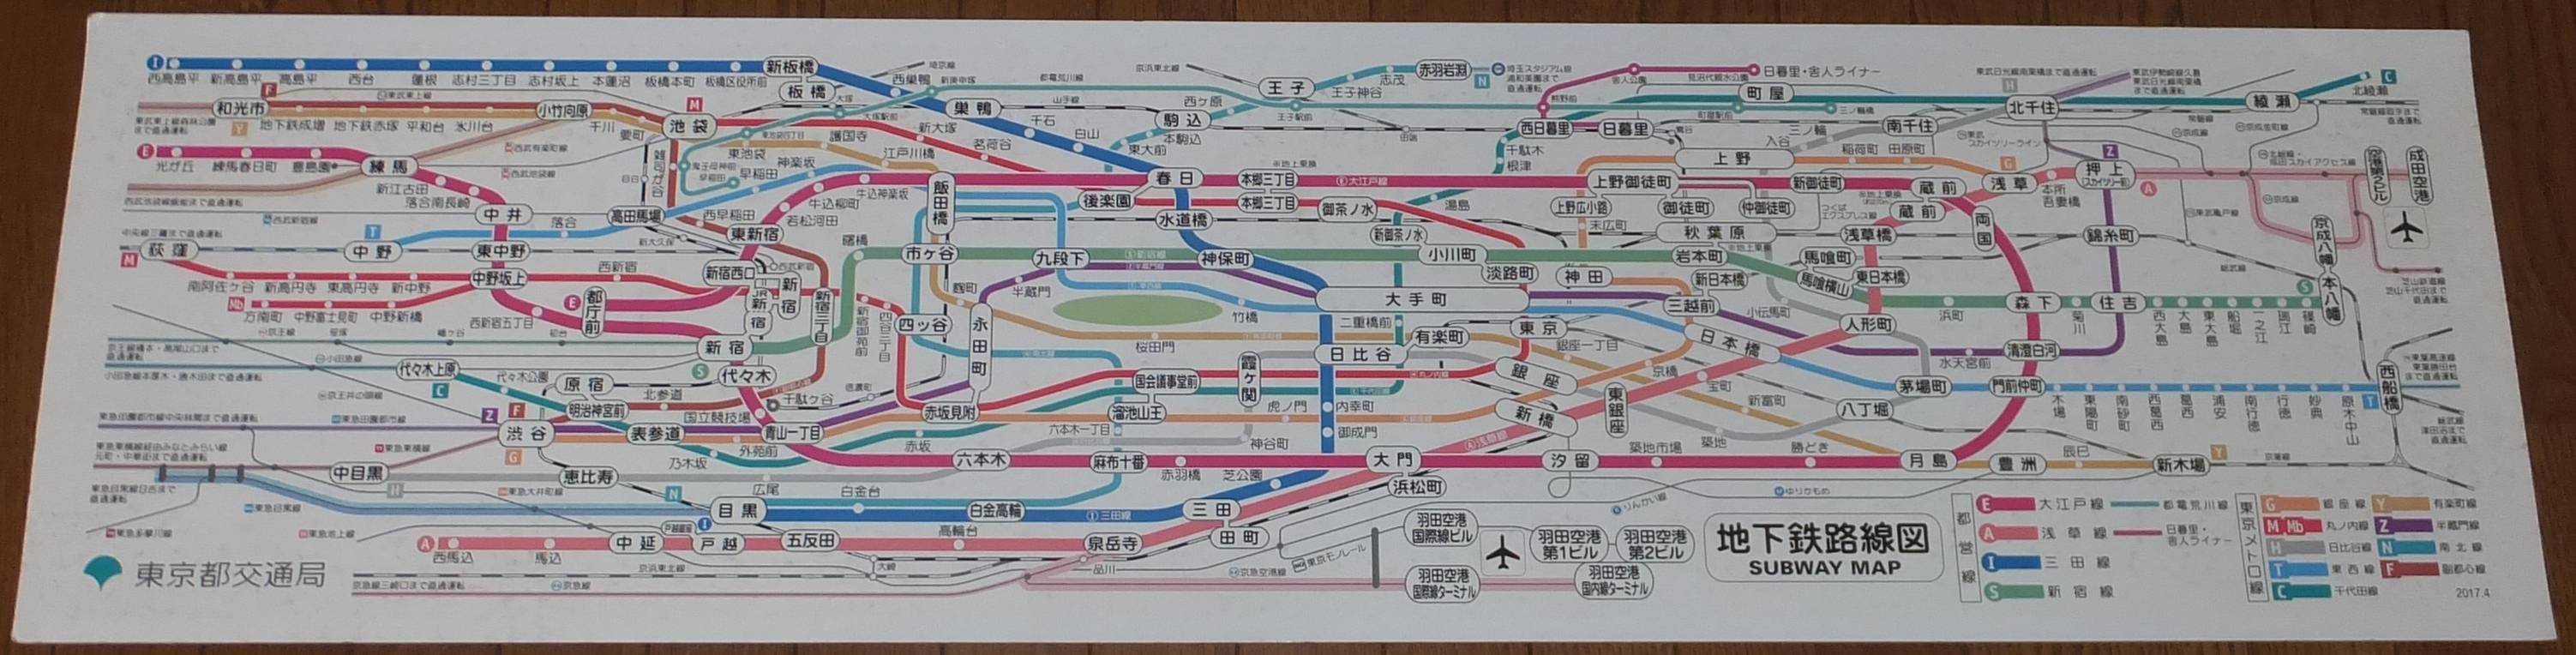 とっておきし新春福袋 激レア 実使用都営地下鉄電車内路線図 鉄道 